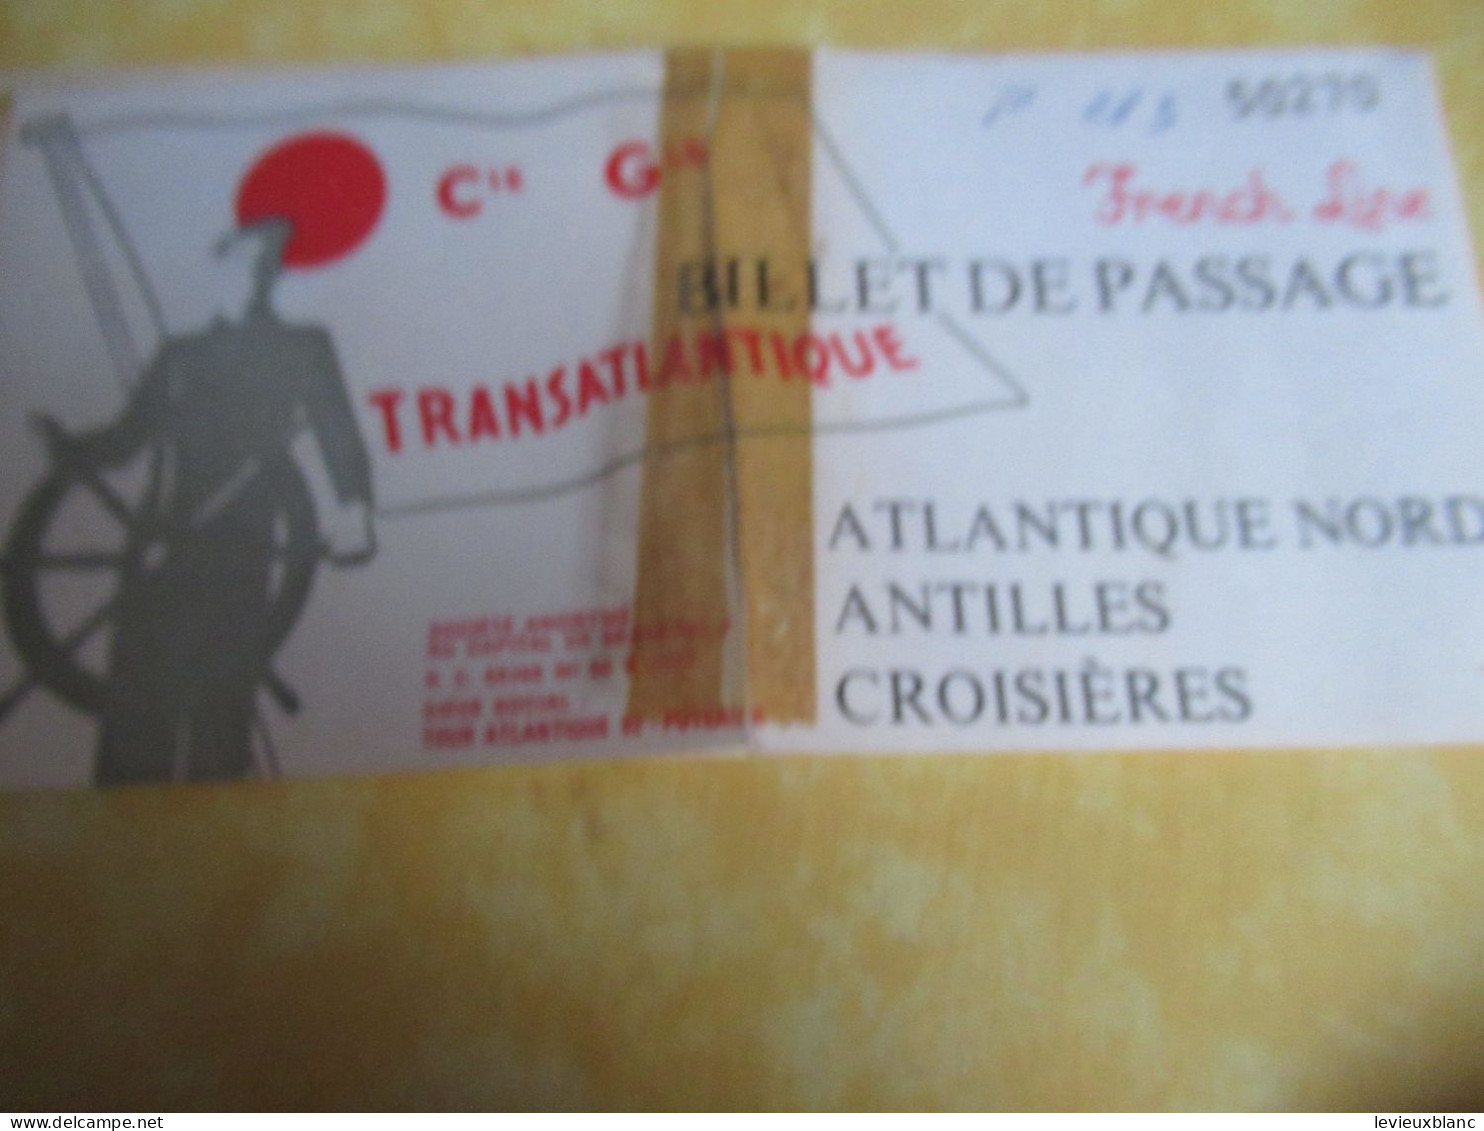 2 Liasses De Billet De Passage (déchirées) Sans Billets/  Paquebot "FRANCE"/ Cie Gle Transatlantique//1972        MAR121 - Boats